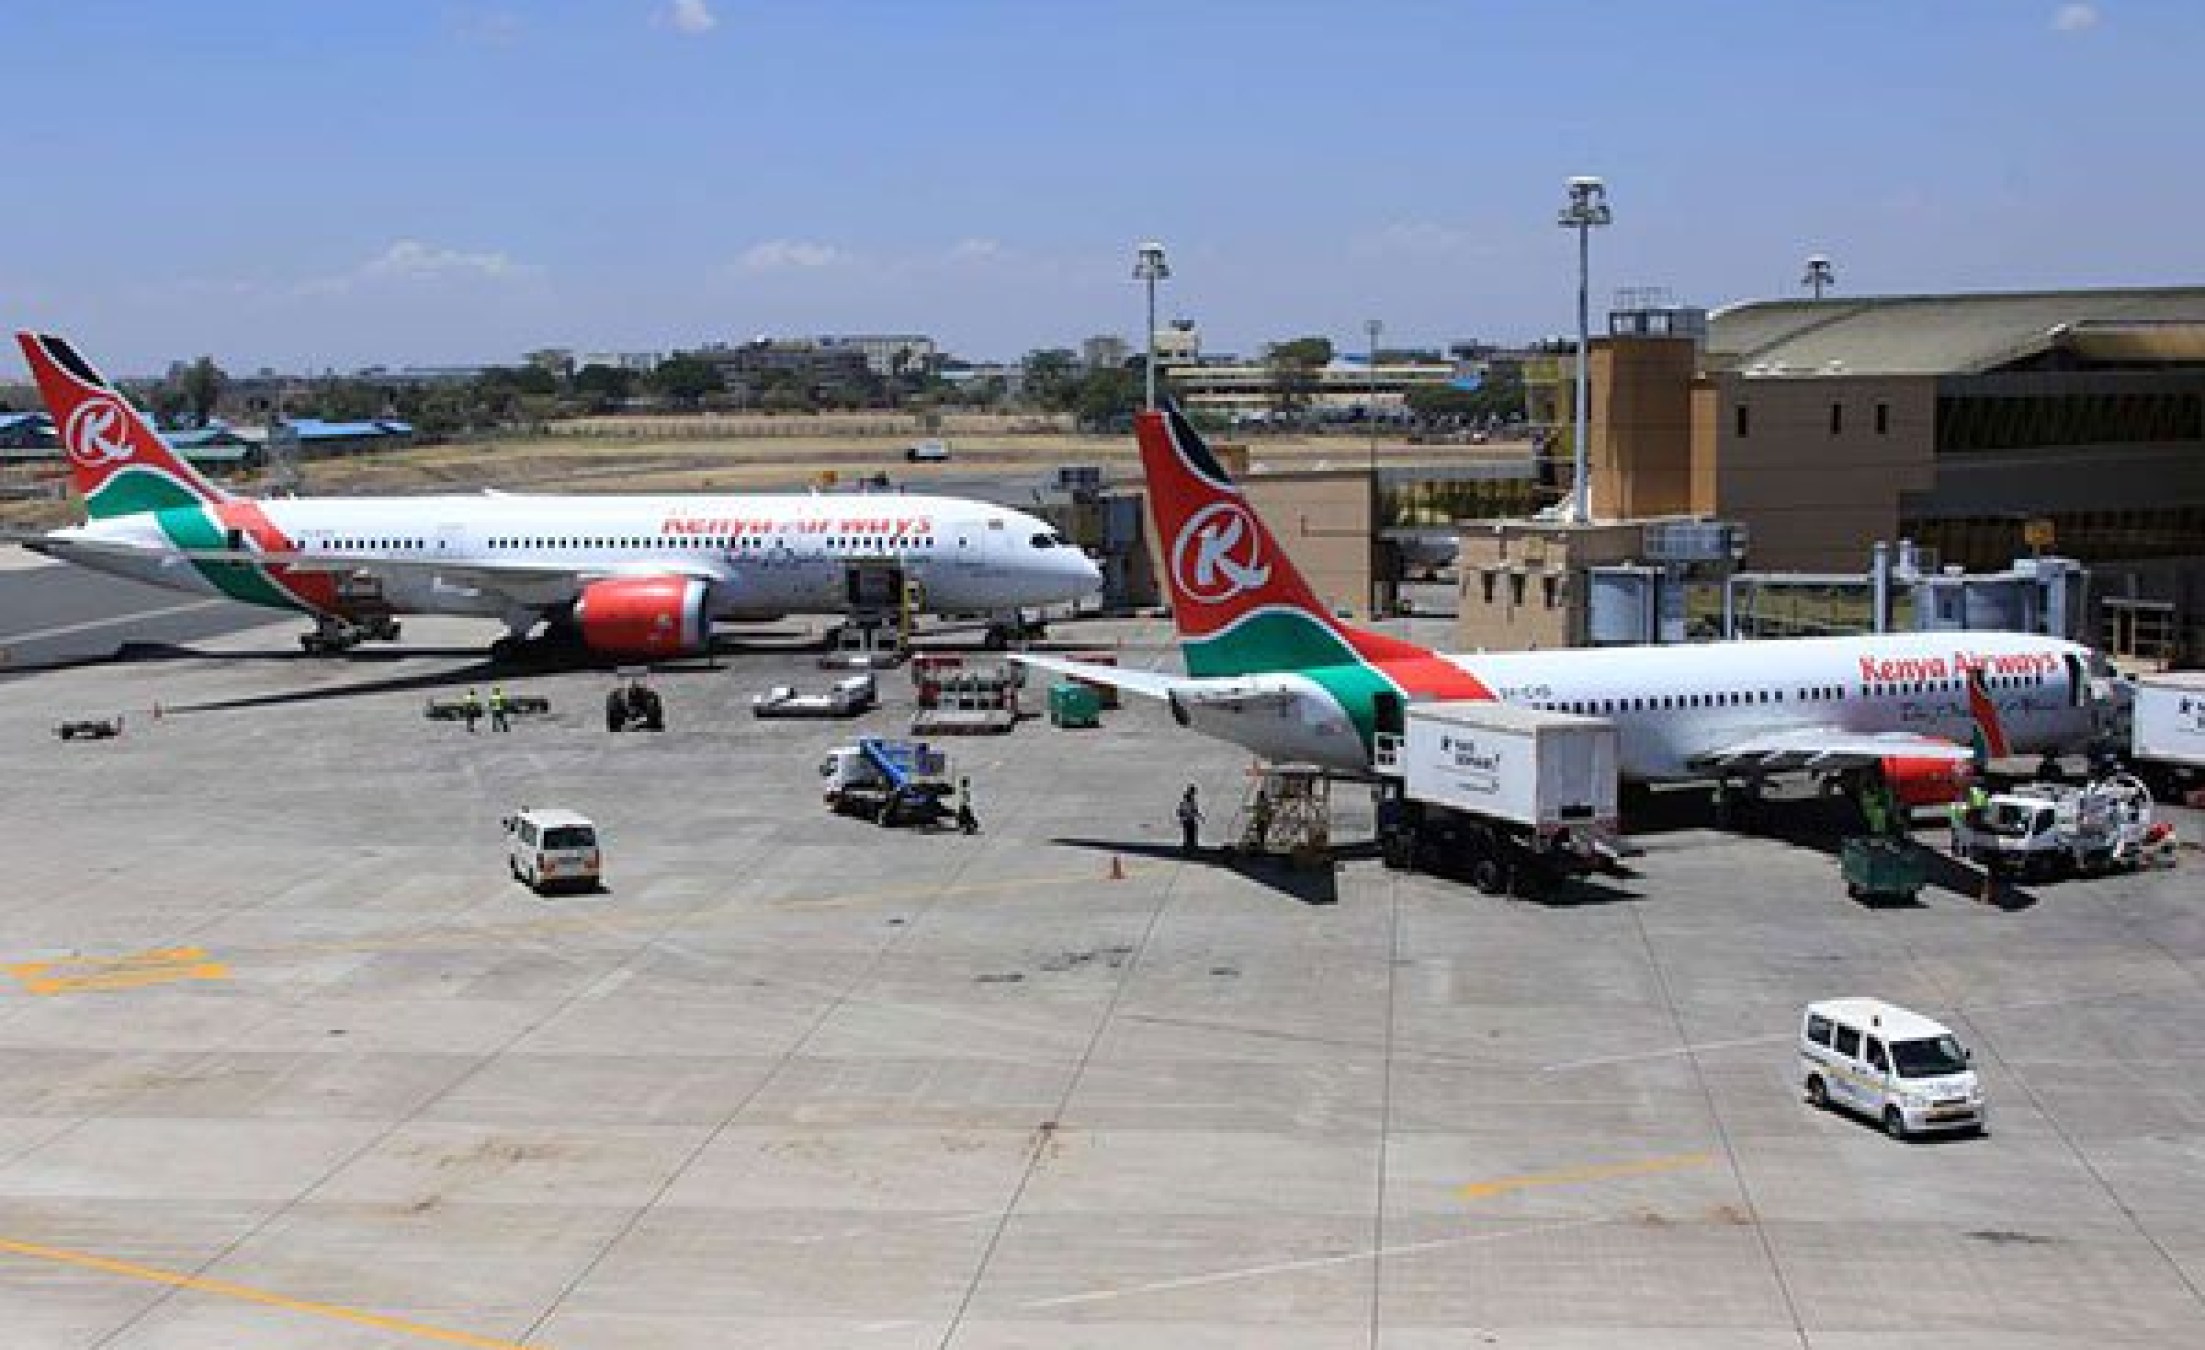 Kenya: U.S. Issues Safety Alert for 10 Kenya Airways Boeing Planes